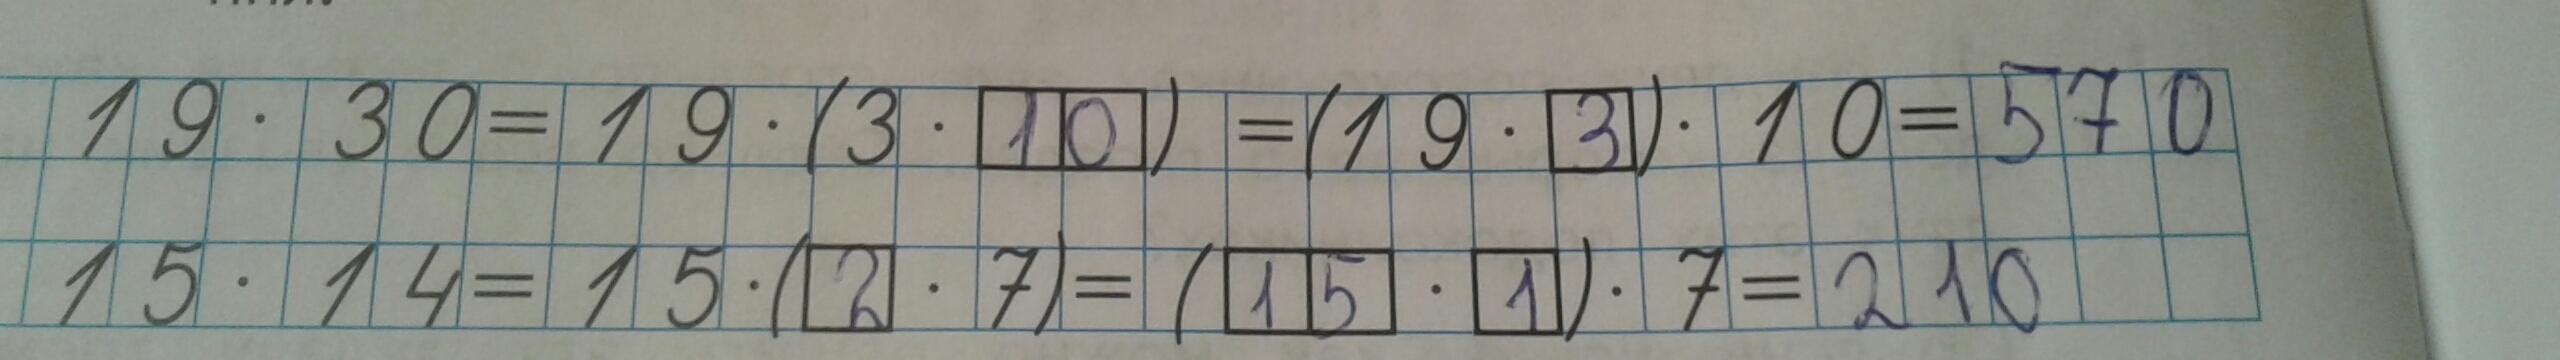 27 40 18 1. (148-24) :4+14•1006 Вычислите. Вычислите 27/40 18. Вычислите: 27 9 :18 . 40 16. Вычислите (148-24):4+14*1006 5 класс.